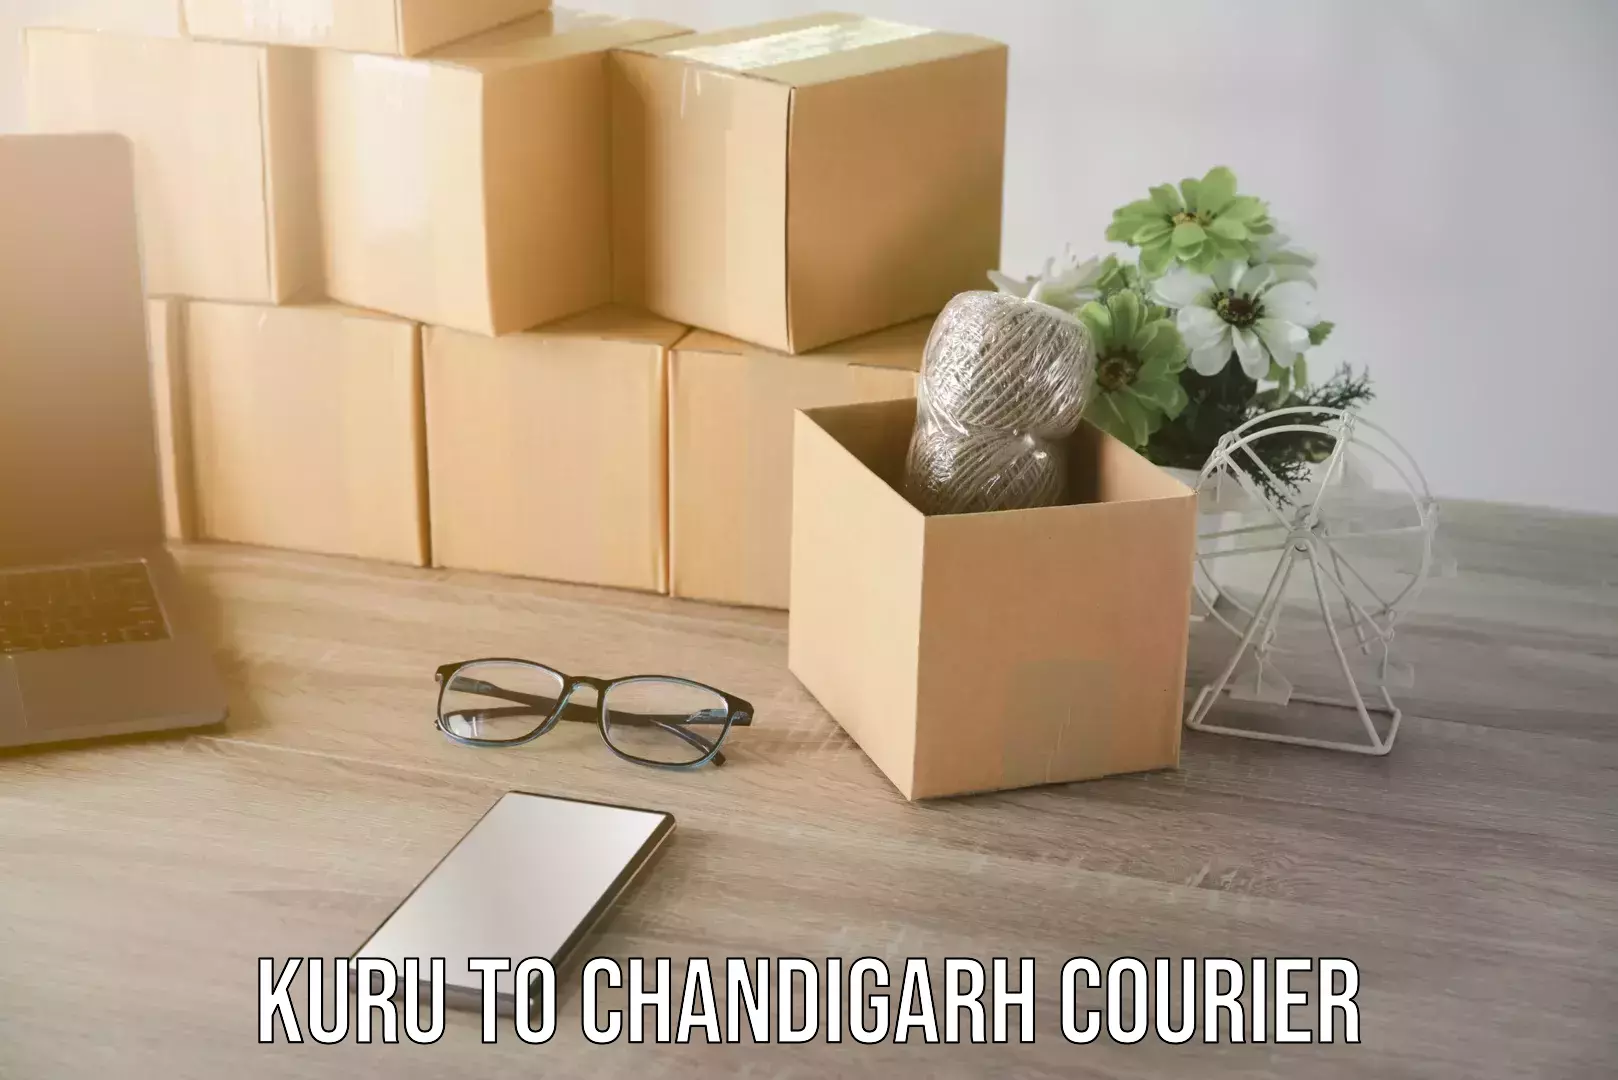 Home shifting experts Kuru to Chandigarh